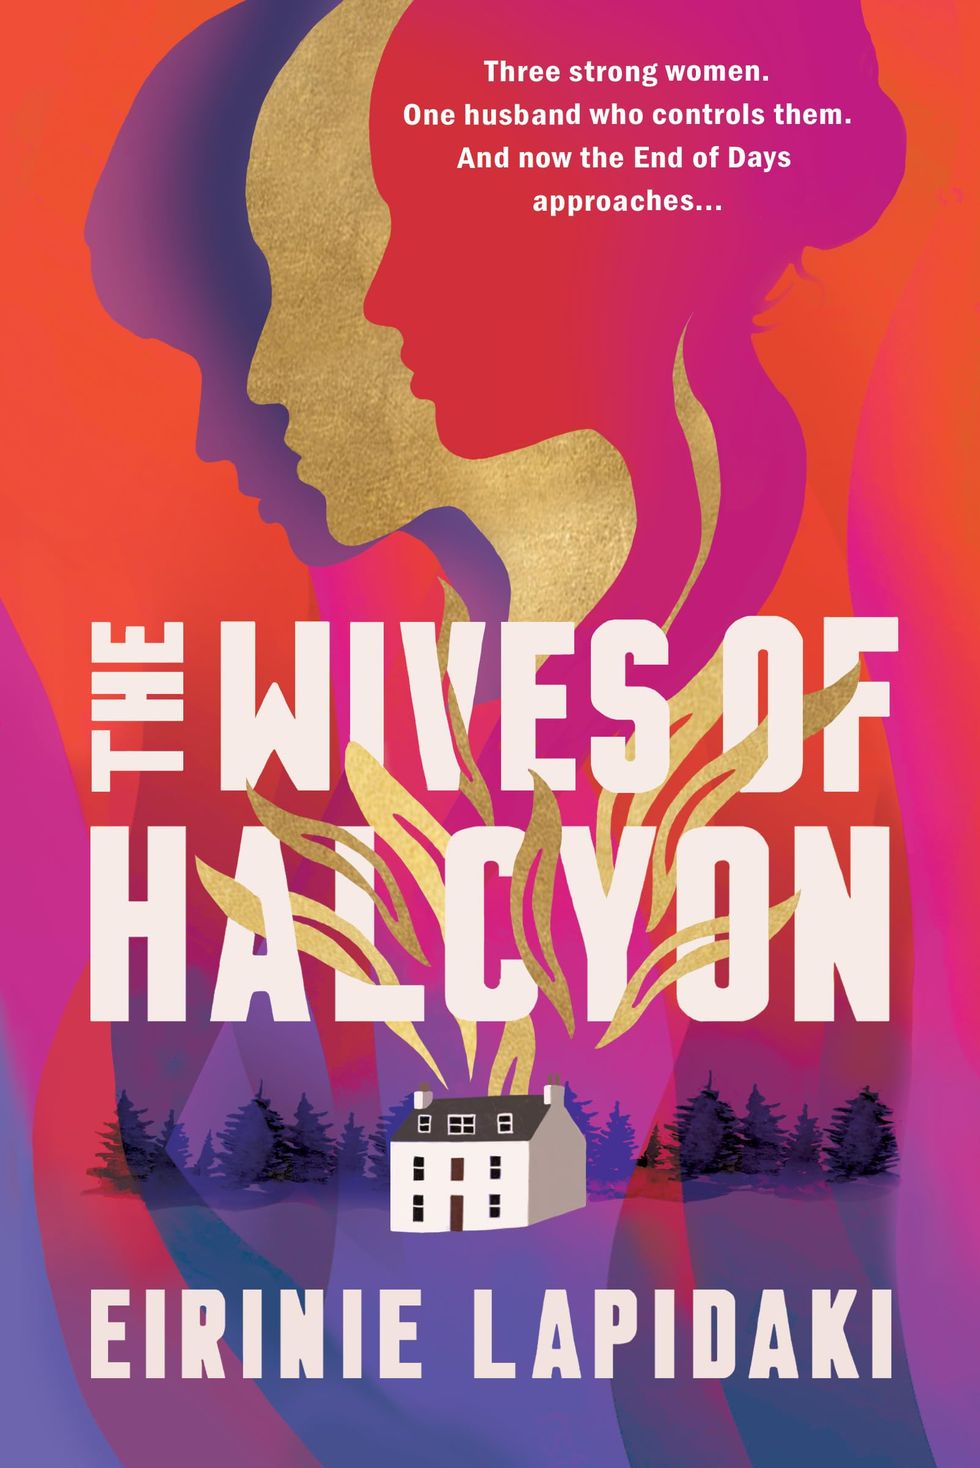 The Wives of Halcyon by Eirinie Lapidaki